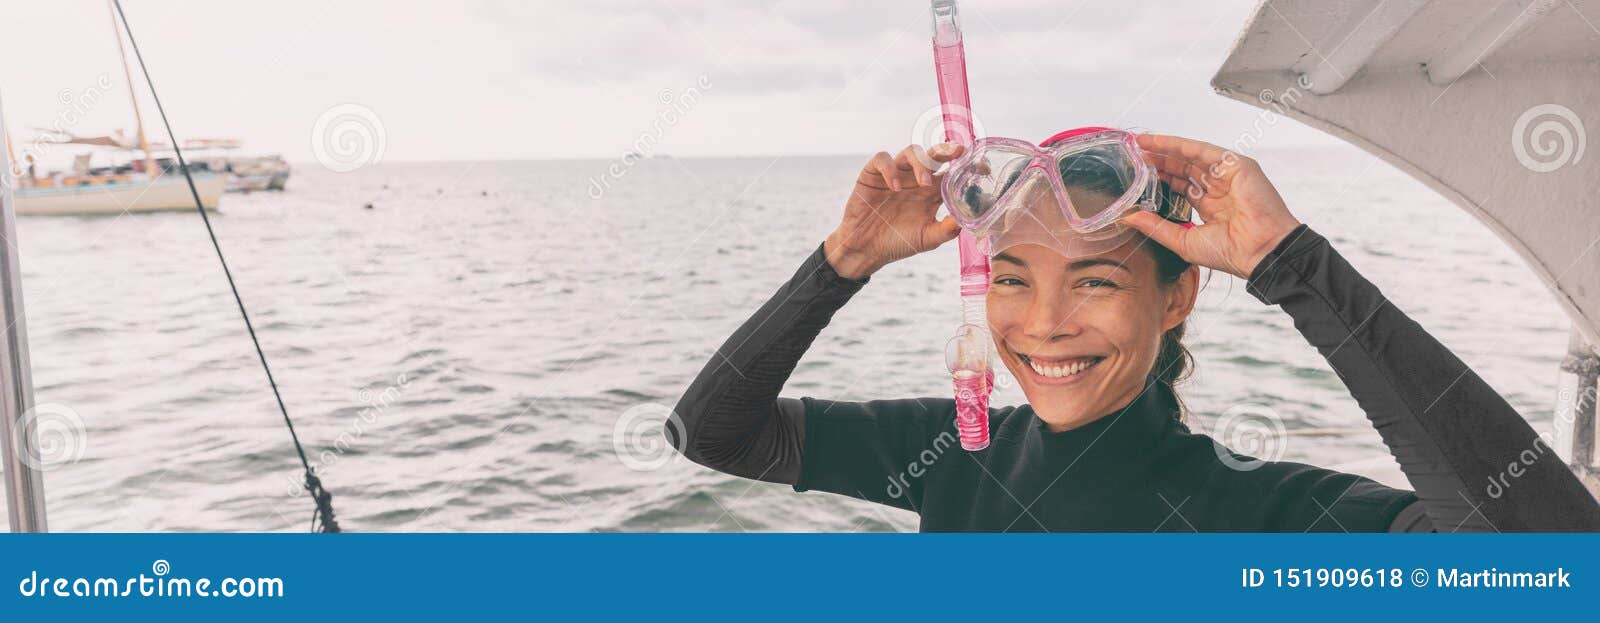 Snorkel maskowej Azjatyckiej kobiety turystyczny dostawać gotowy dla snorkeling aktywności wycieczki turysycznej od łódkowatego s